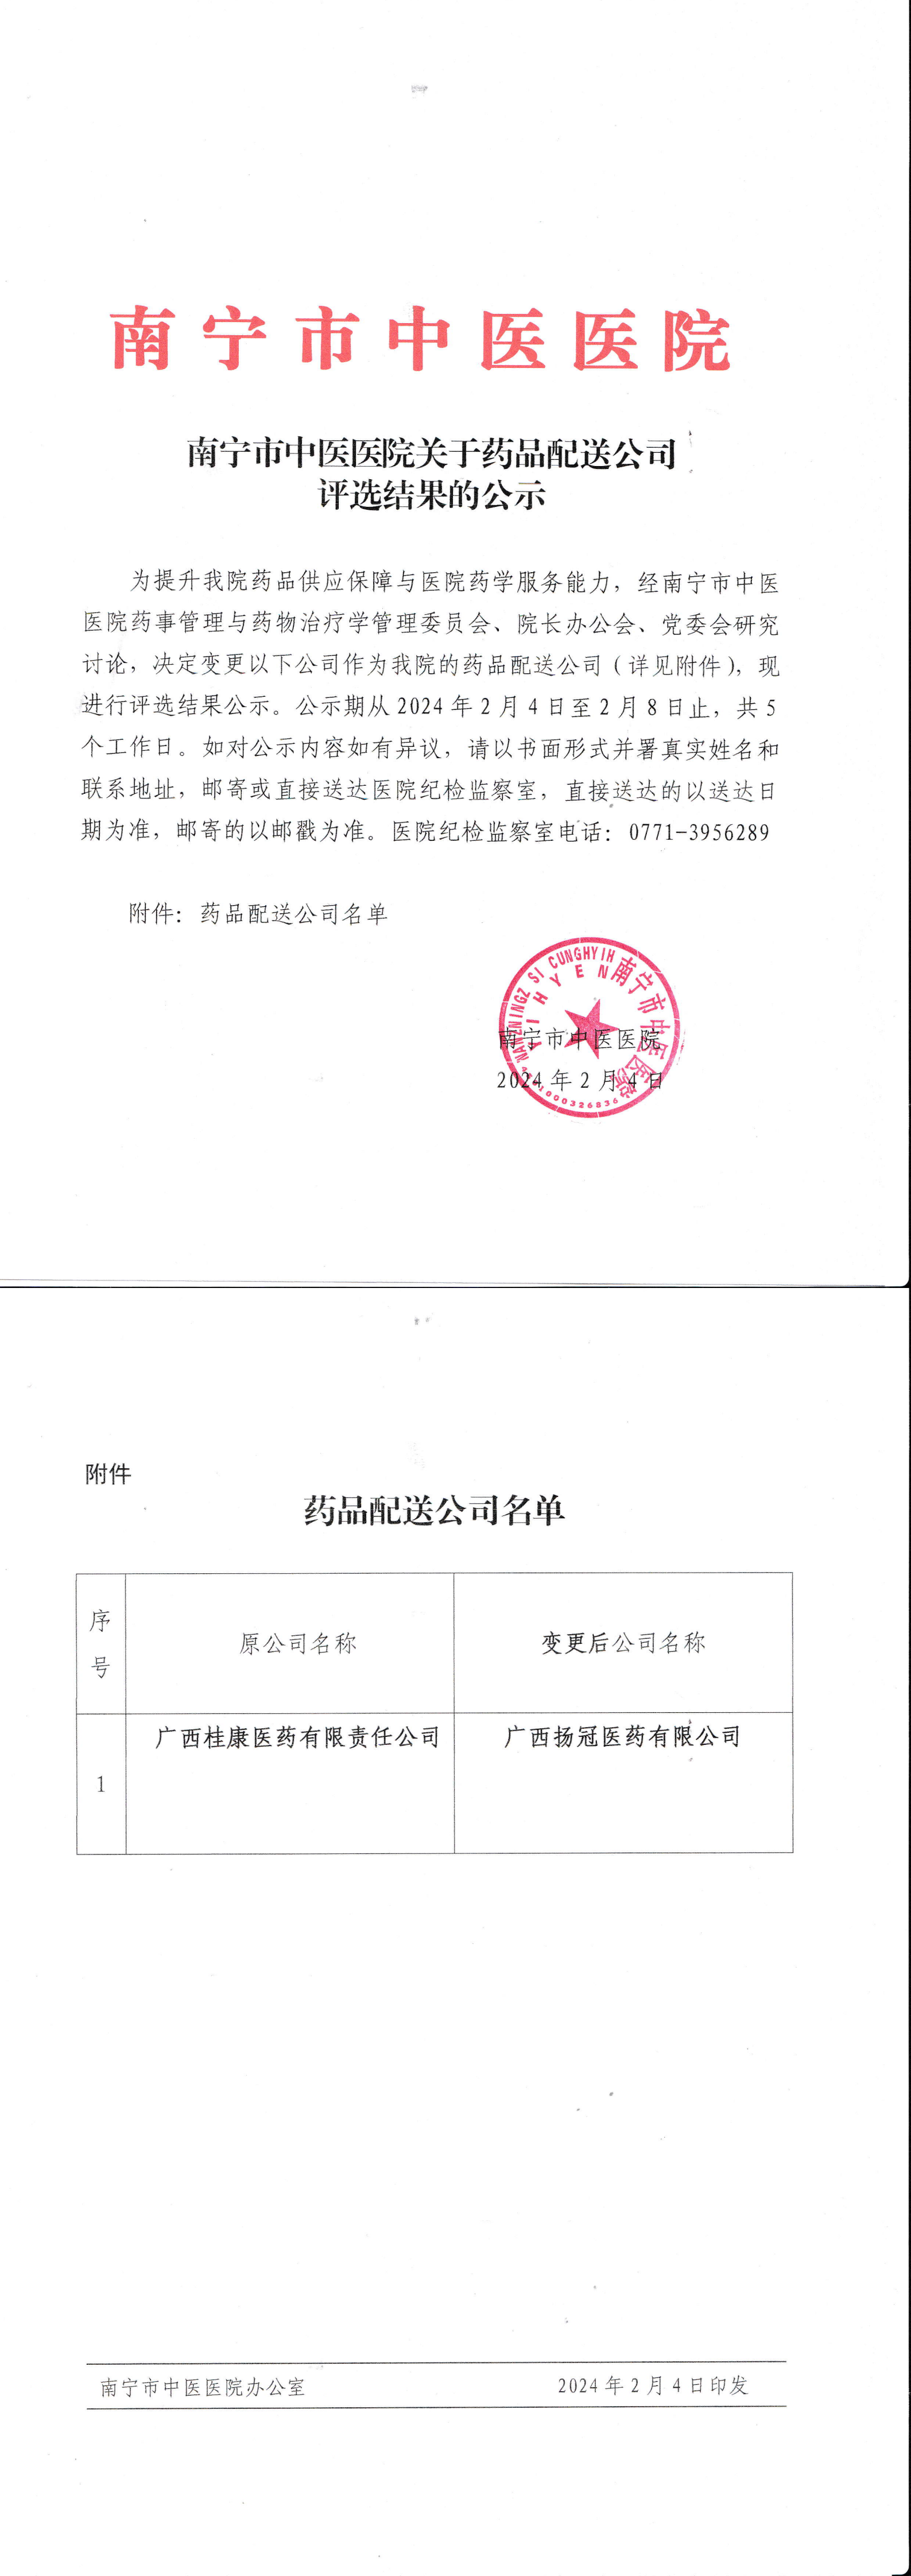 南宁市中医医院关于药品配送公司评选结果的公示_00.png